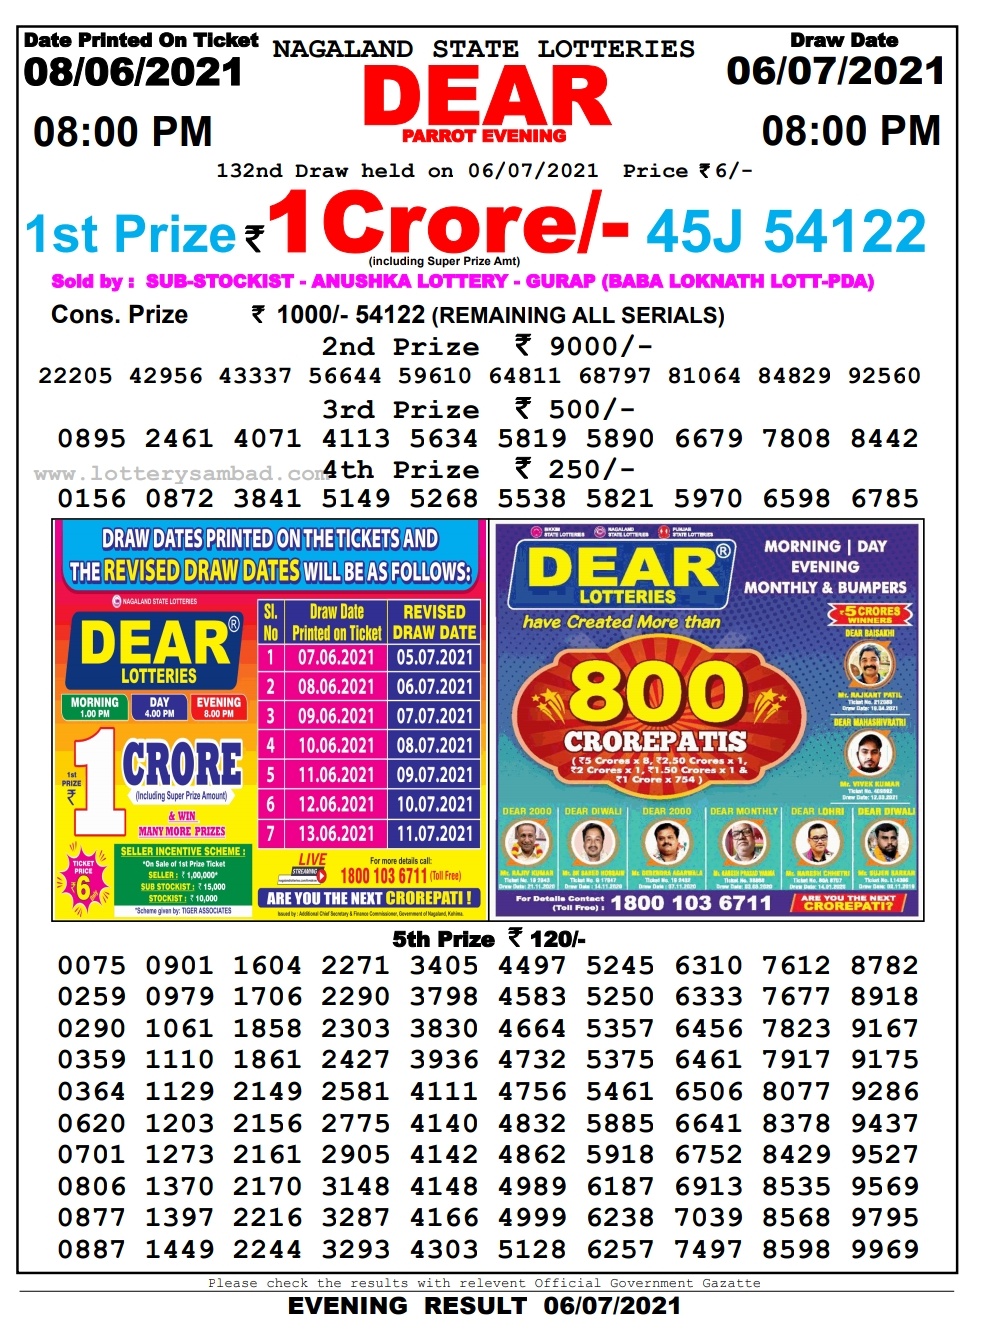 dear lottery 08.00 pm 06-07-2021